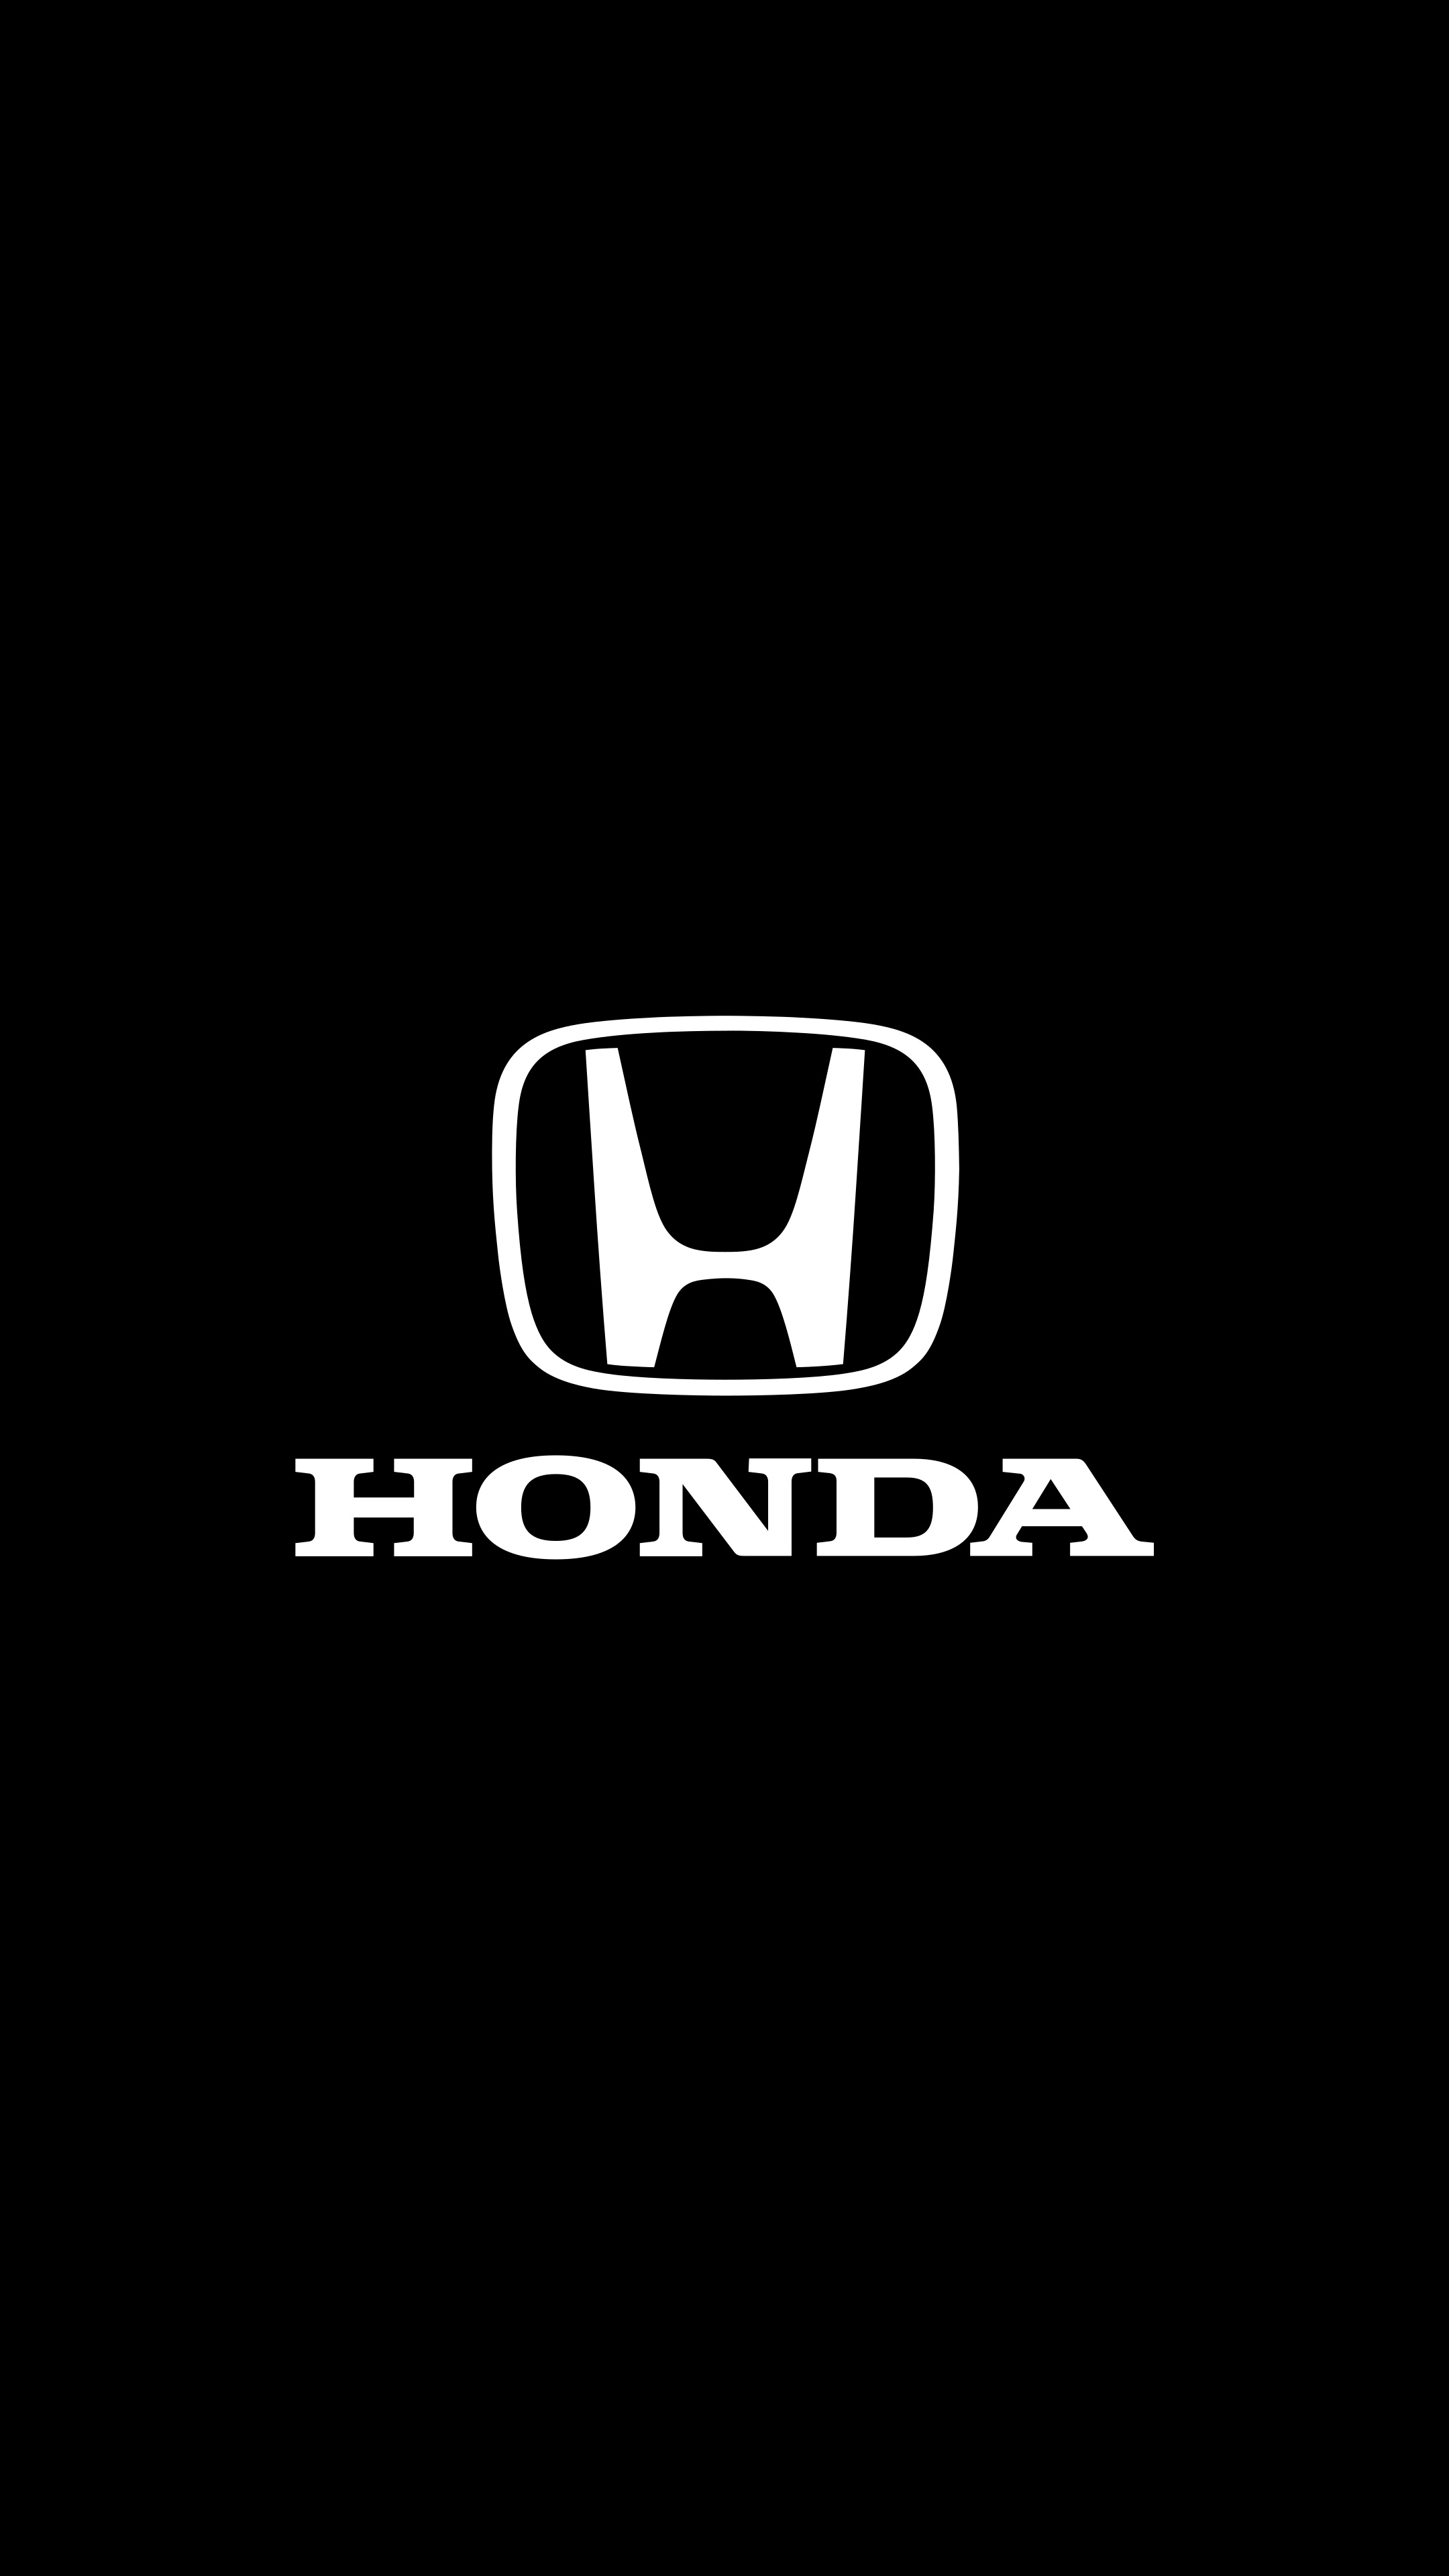 Honda, Carros de luxo, Carros motos, 4K wallpaper, 2160x3840 4K Phone